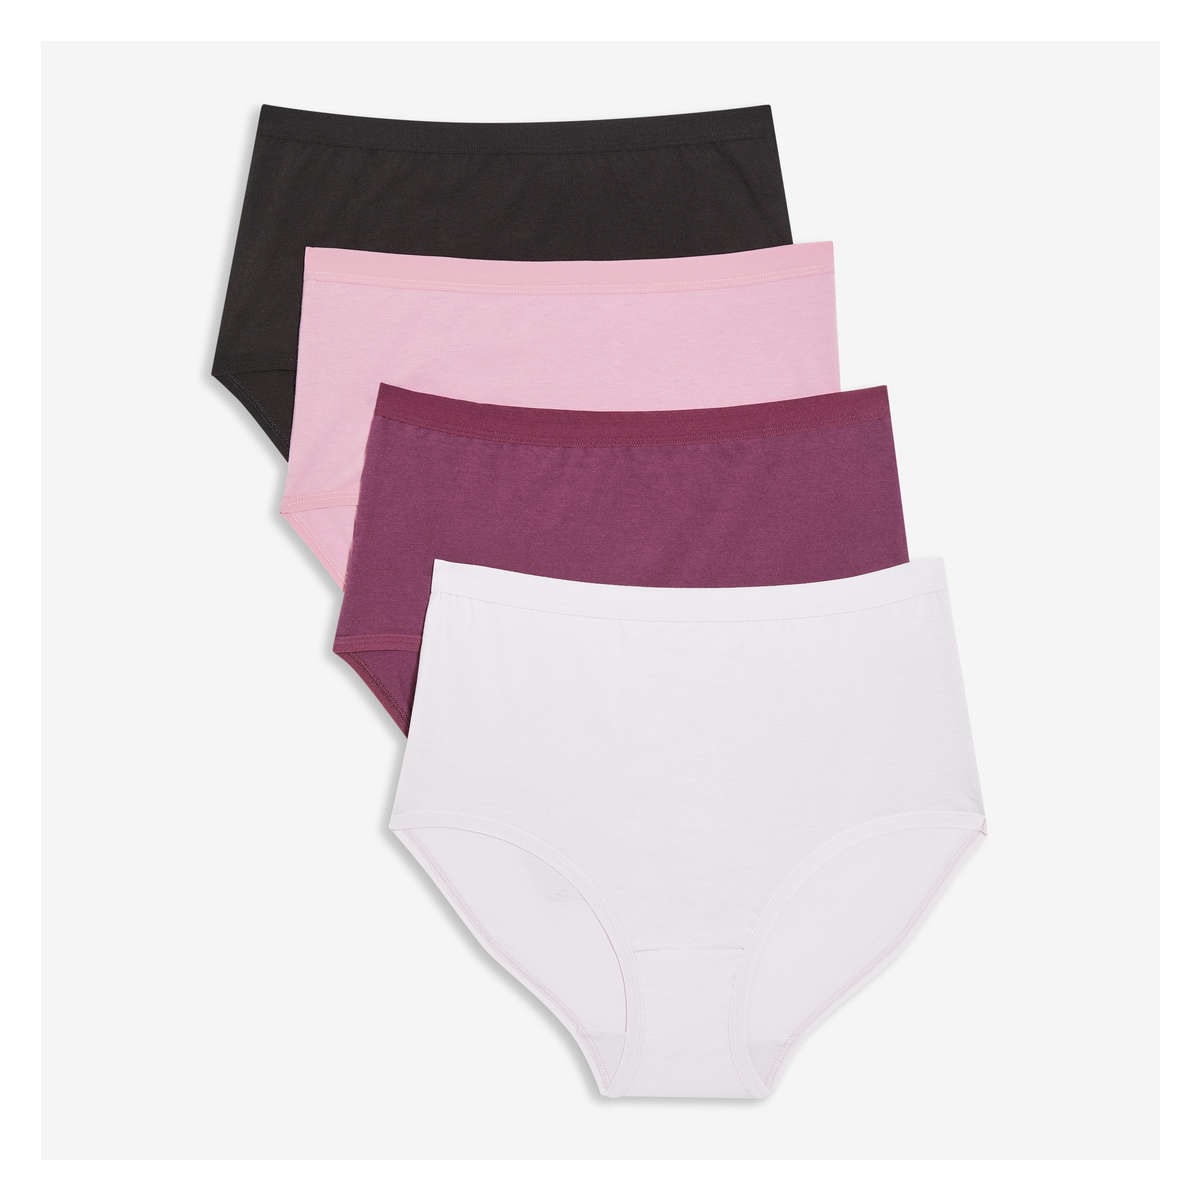 Women's Organic Cotton Underwear